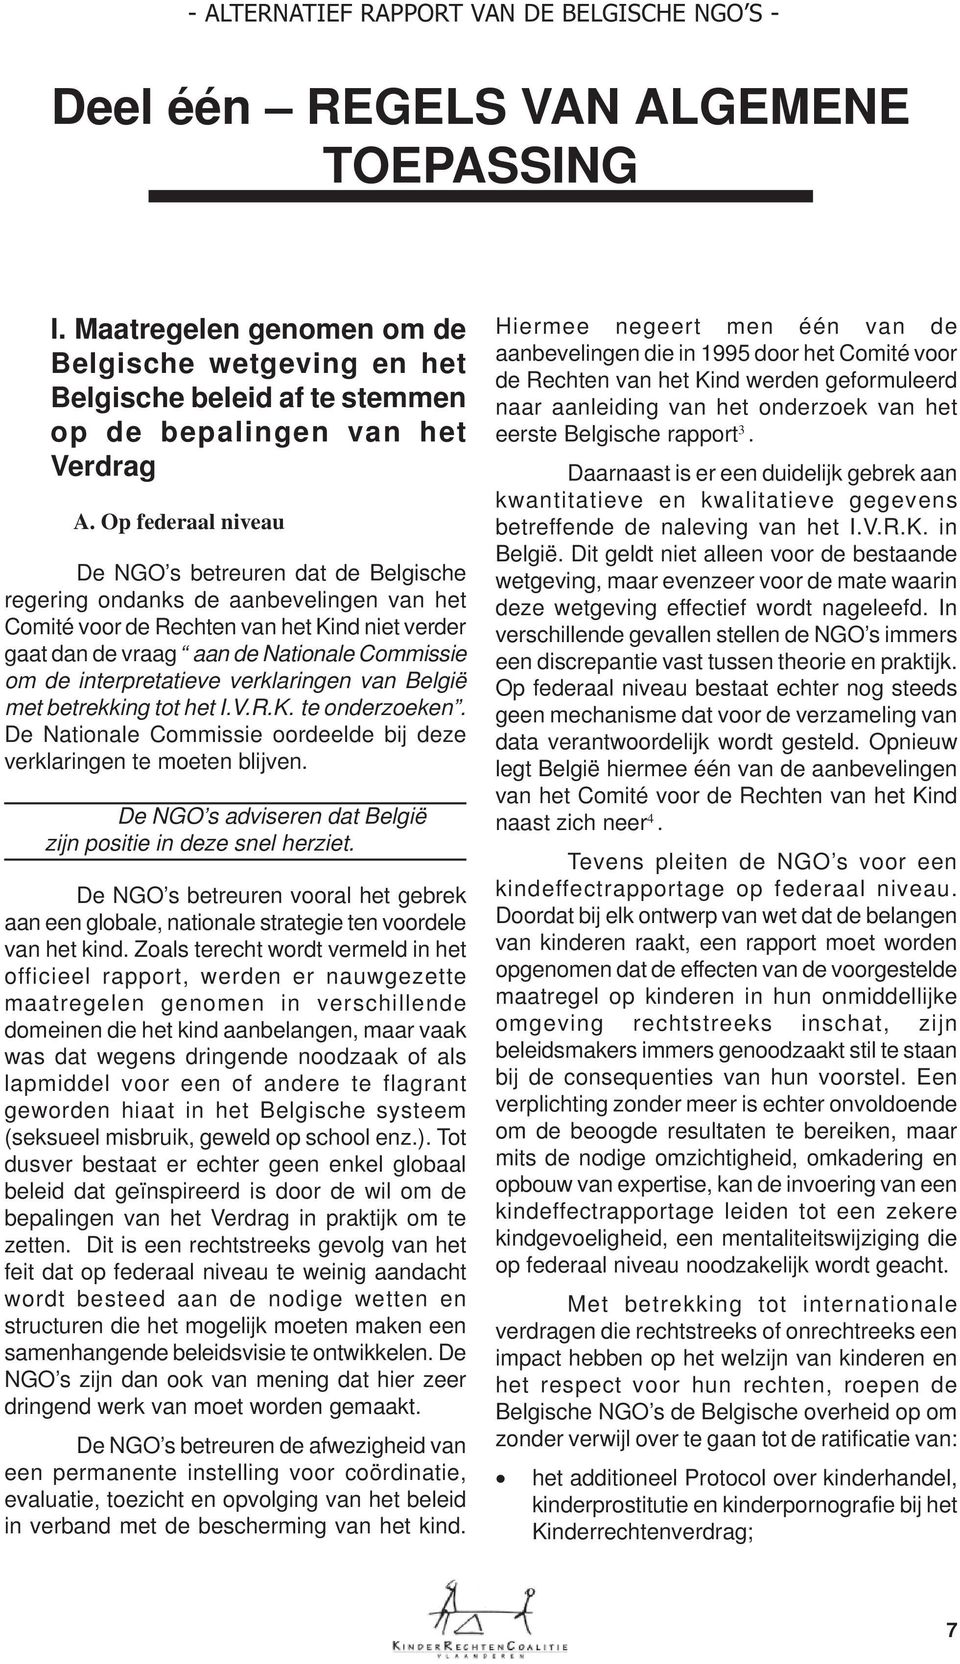 interpretatieve verklaringen van België met betrekking tot het I.V.R.K. te onderzoeken. De Nationale Commissie oordeelde bij deze verklaringen te moeten blijven.